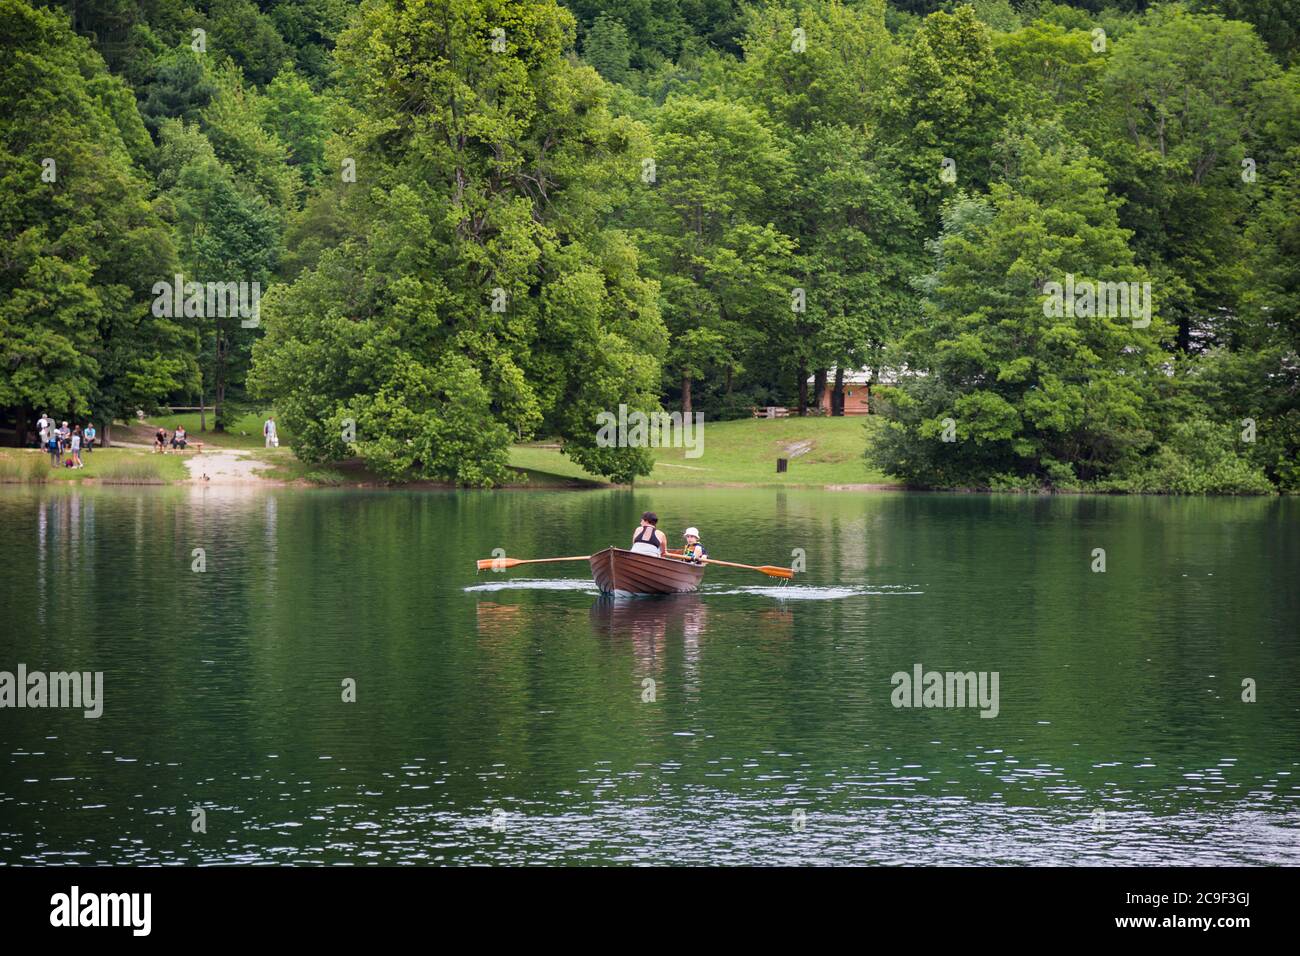 Parc national des lacs de Plitvice, comté de Lika-Senj et comté de Karlovac, Croatie. Aviron dans un bateau loué sur l'un des 16 lacs du parc. Banque D'Images